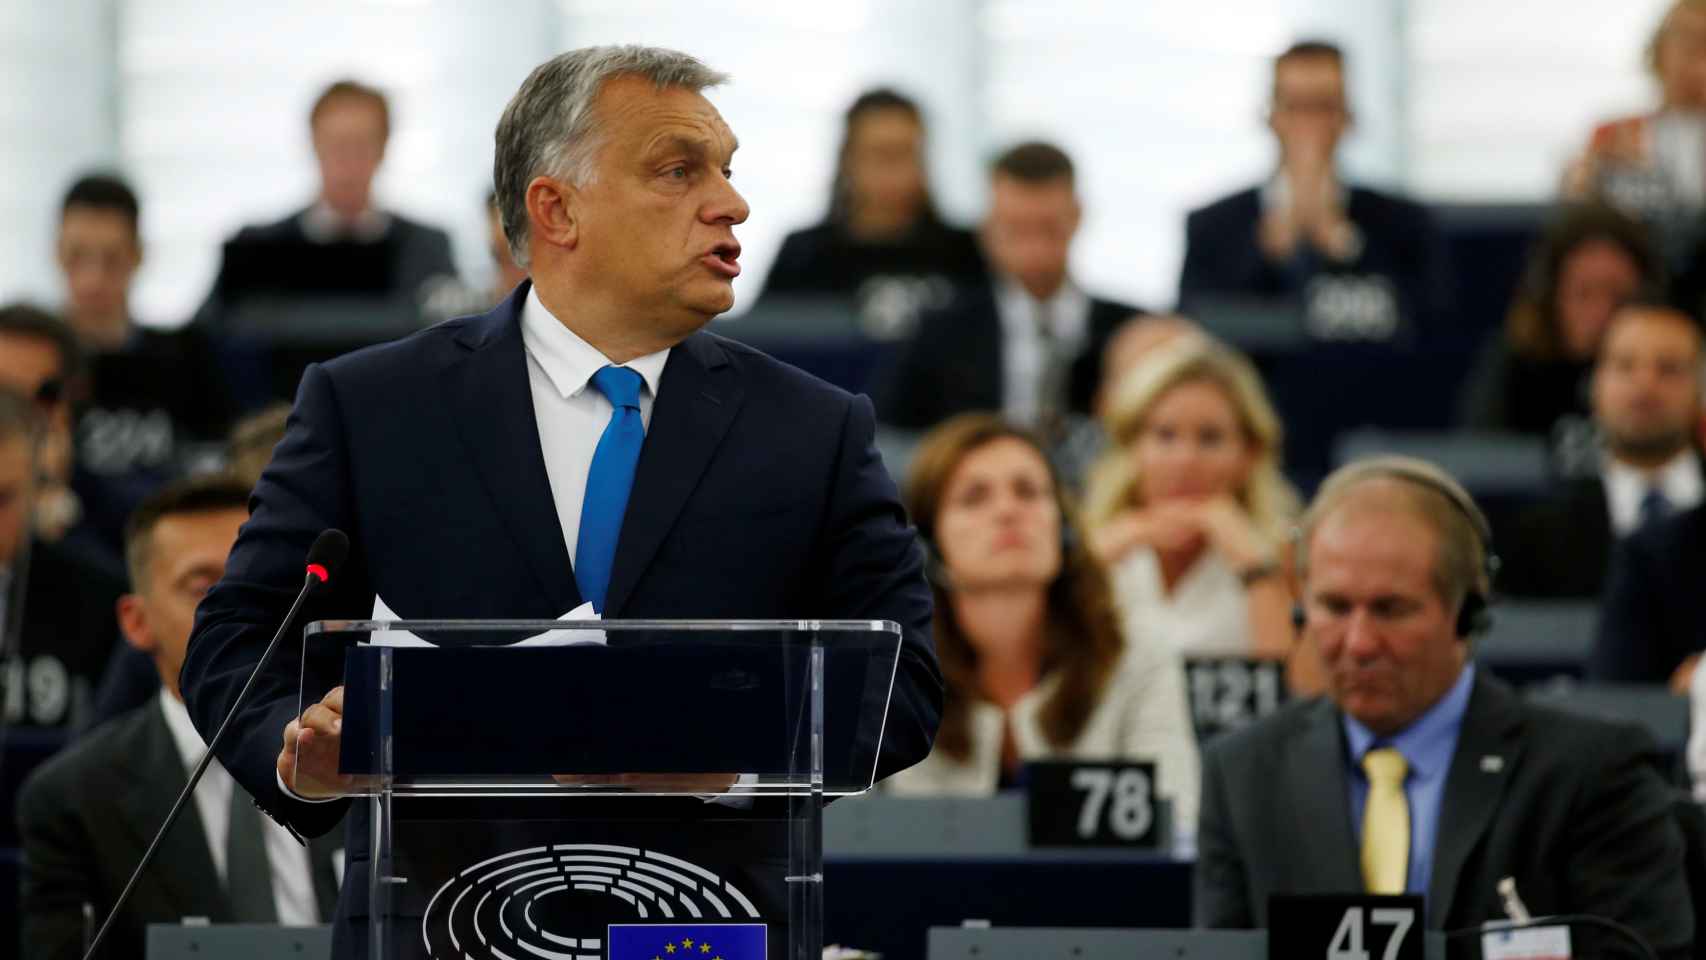 El primer ministro húngaro, Viktor Orbán, durante el debate en la Eurocámara